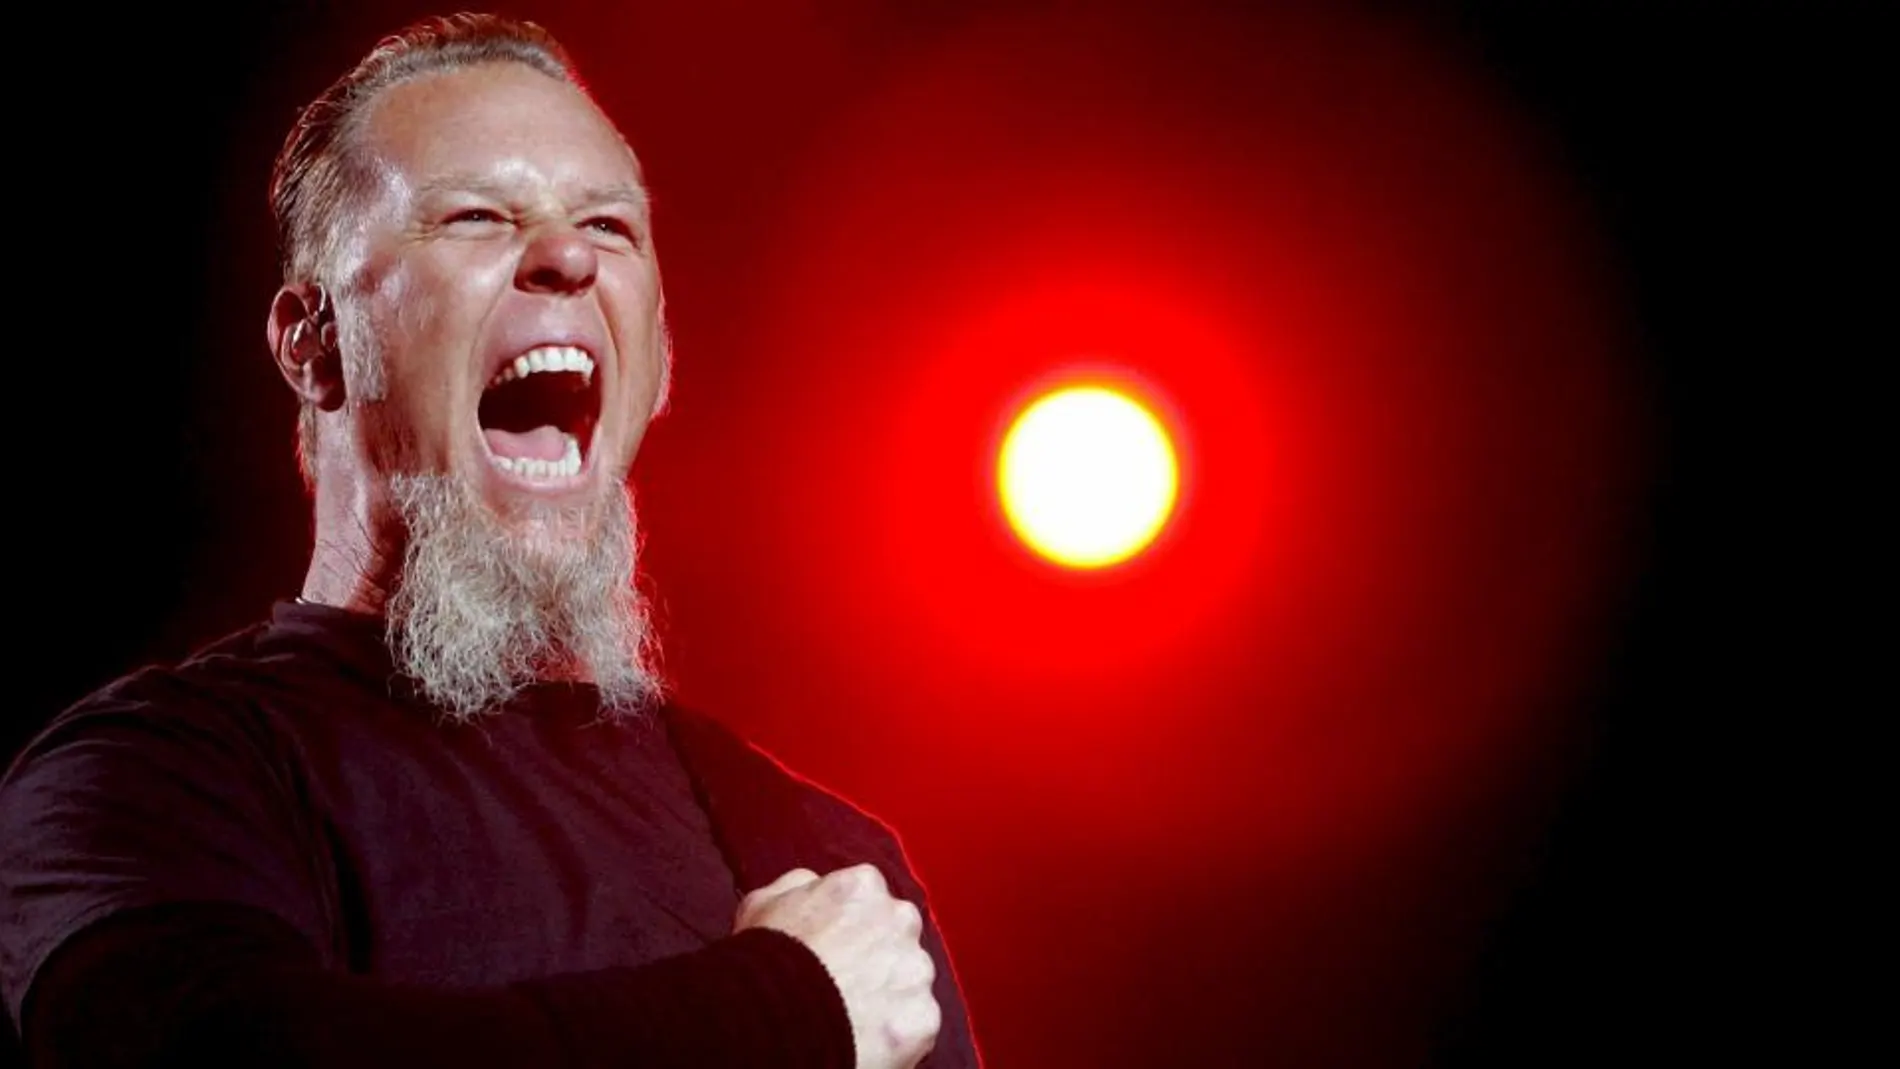 El guitarrista del grupo de música estadounidense Metallica, James Hetfield, cuya canción "Enter Sandman" fue utilizada por la C.I.A. para torturar prisioneros